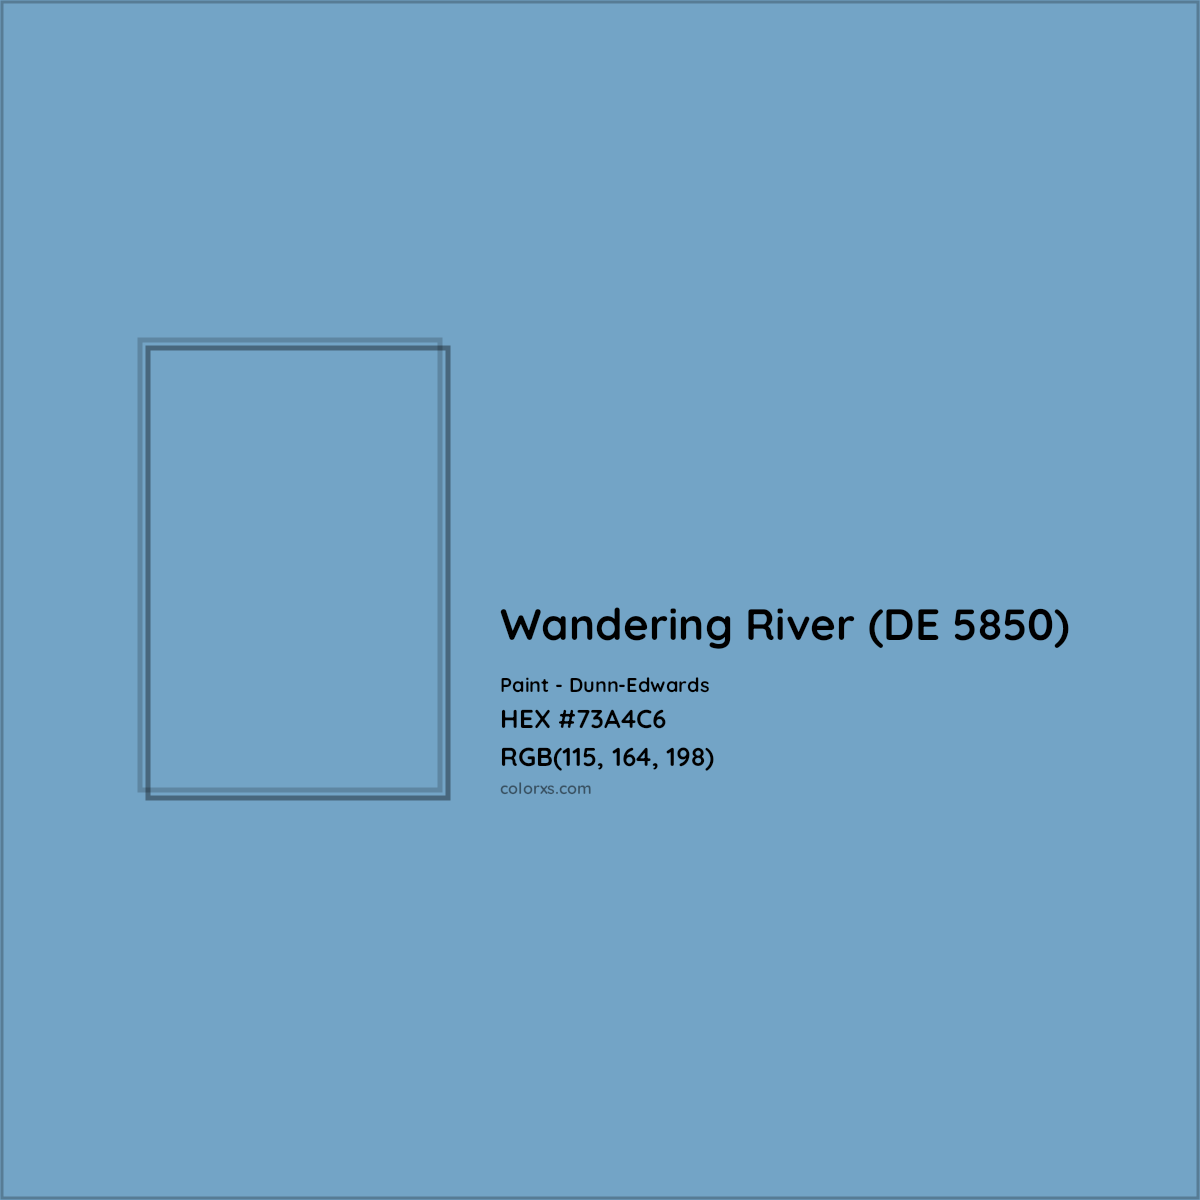 HEX #73A4C6 Wandering River (DE 5850) Paint Dunn-Edwards - Color Code